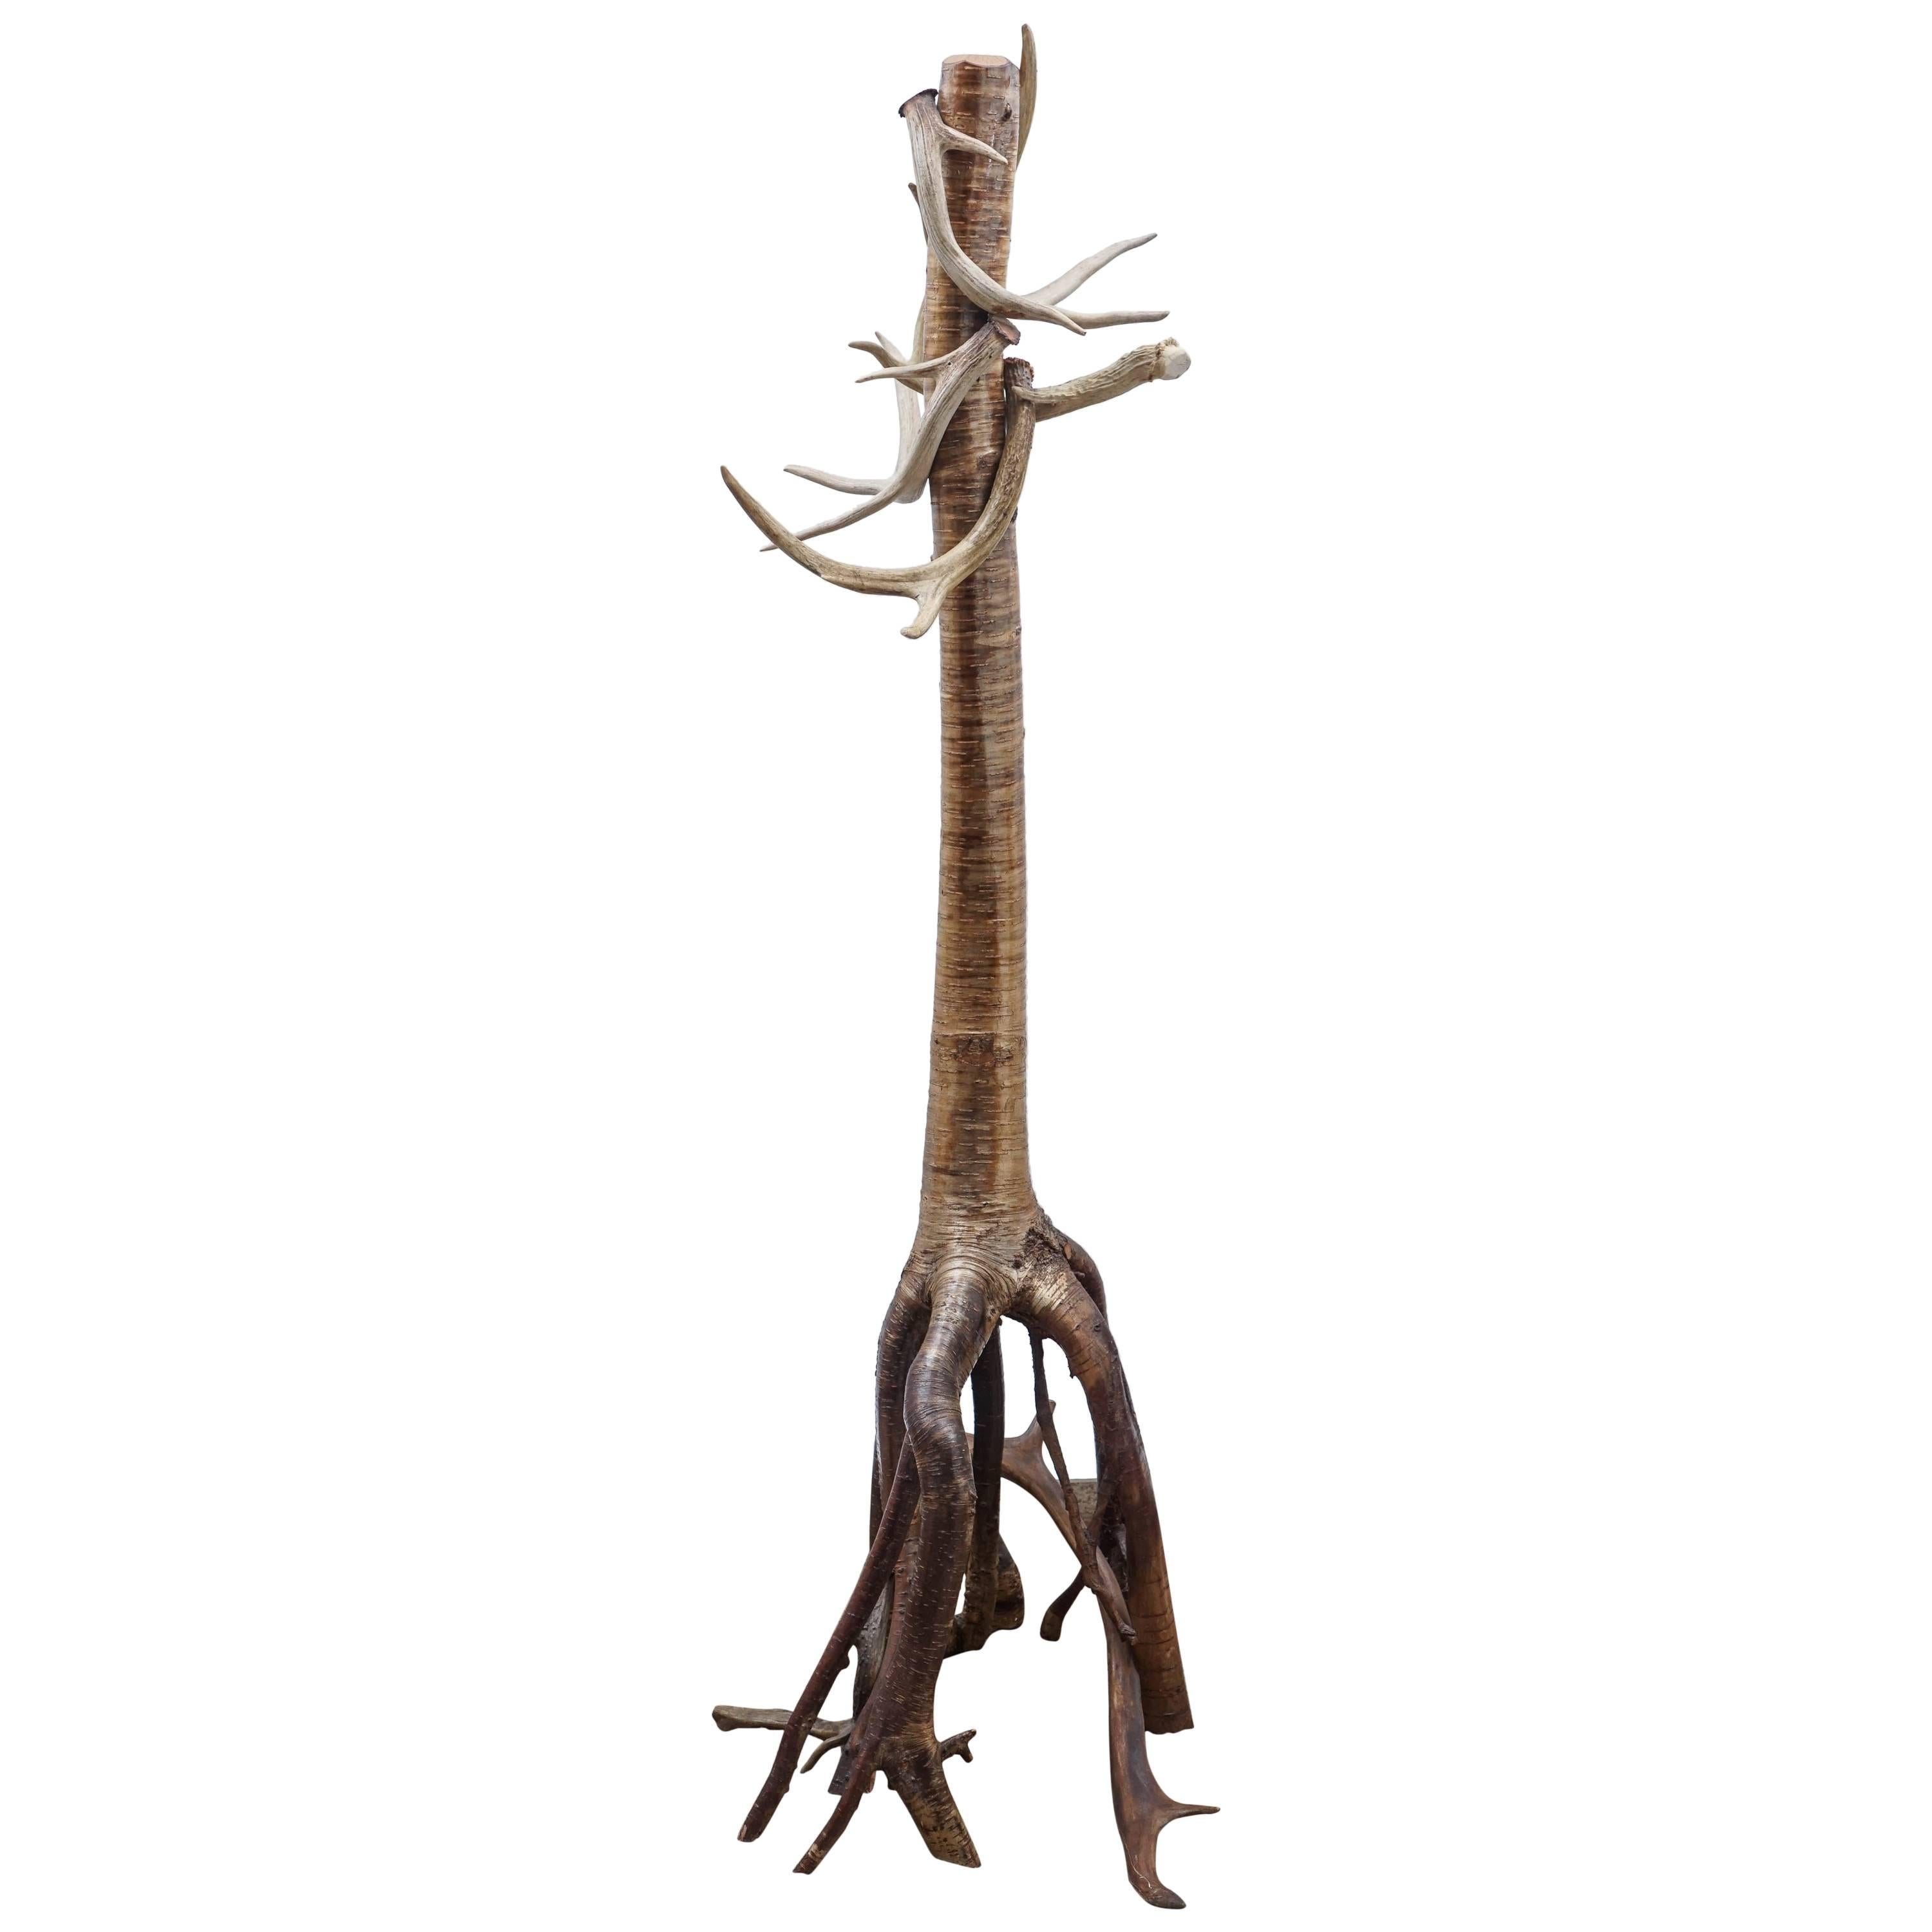 Barney Bellinger Sculpture for Sampson Bog Studio, Rustic Adirondack Folk Art For Sale